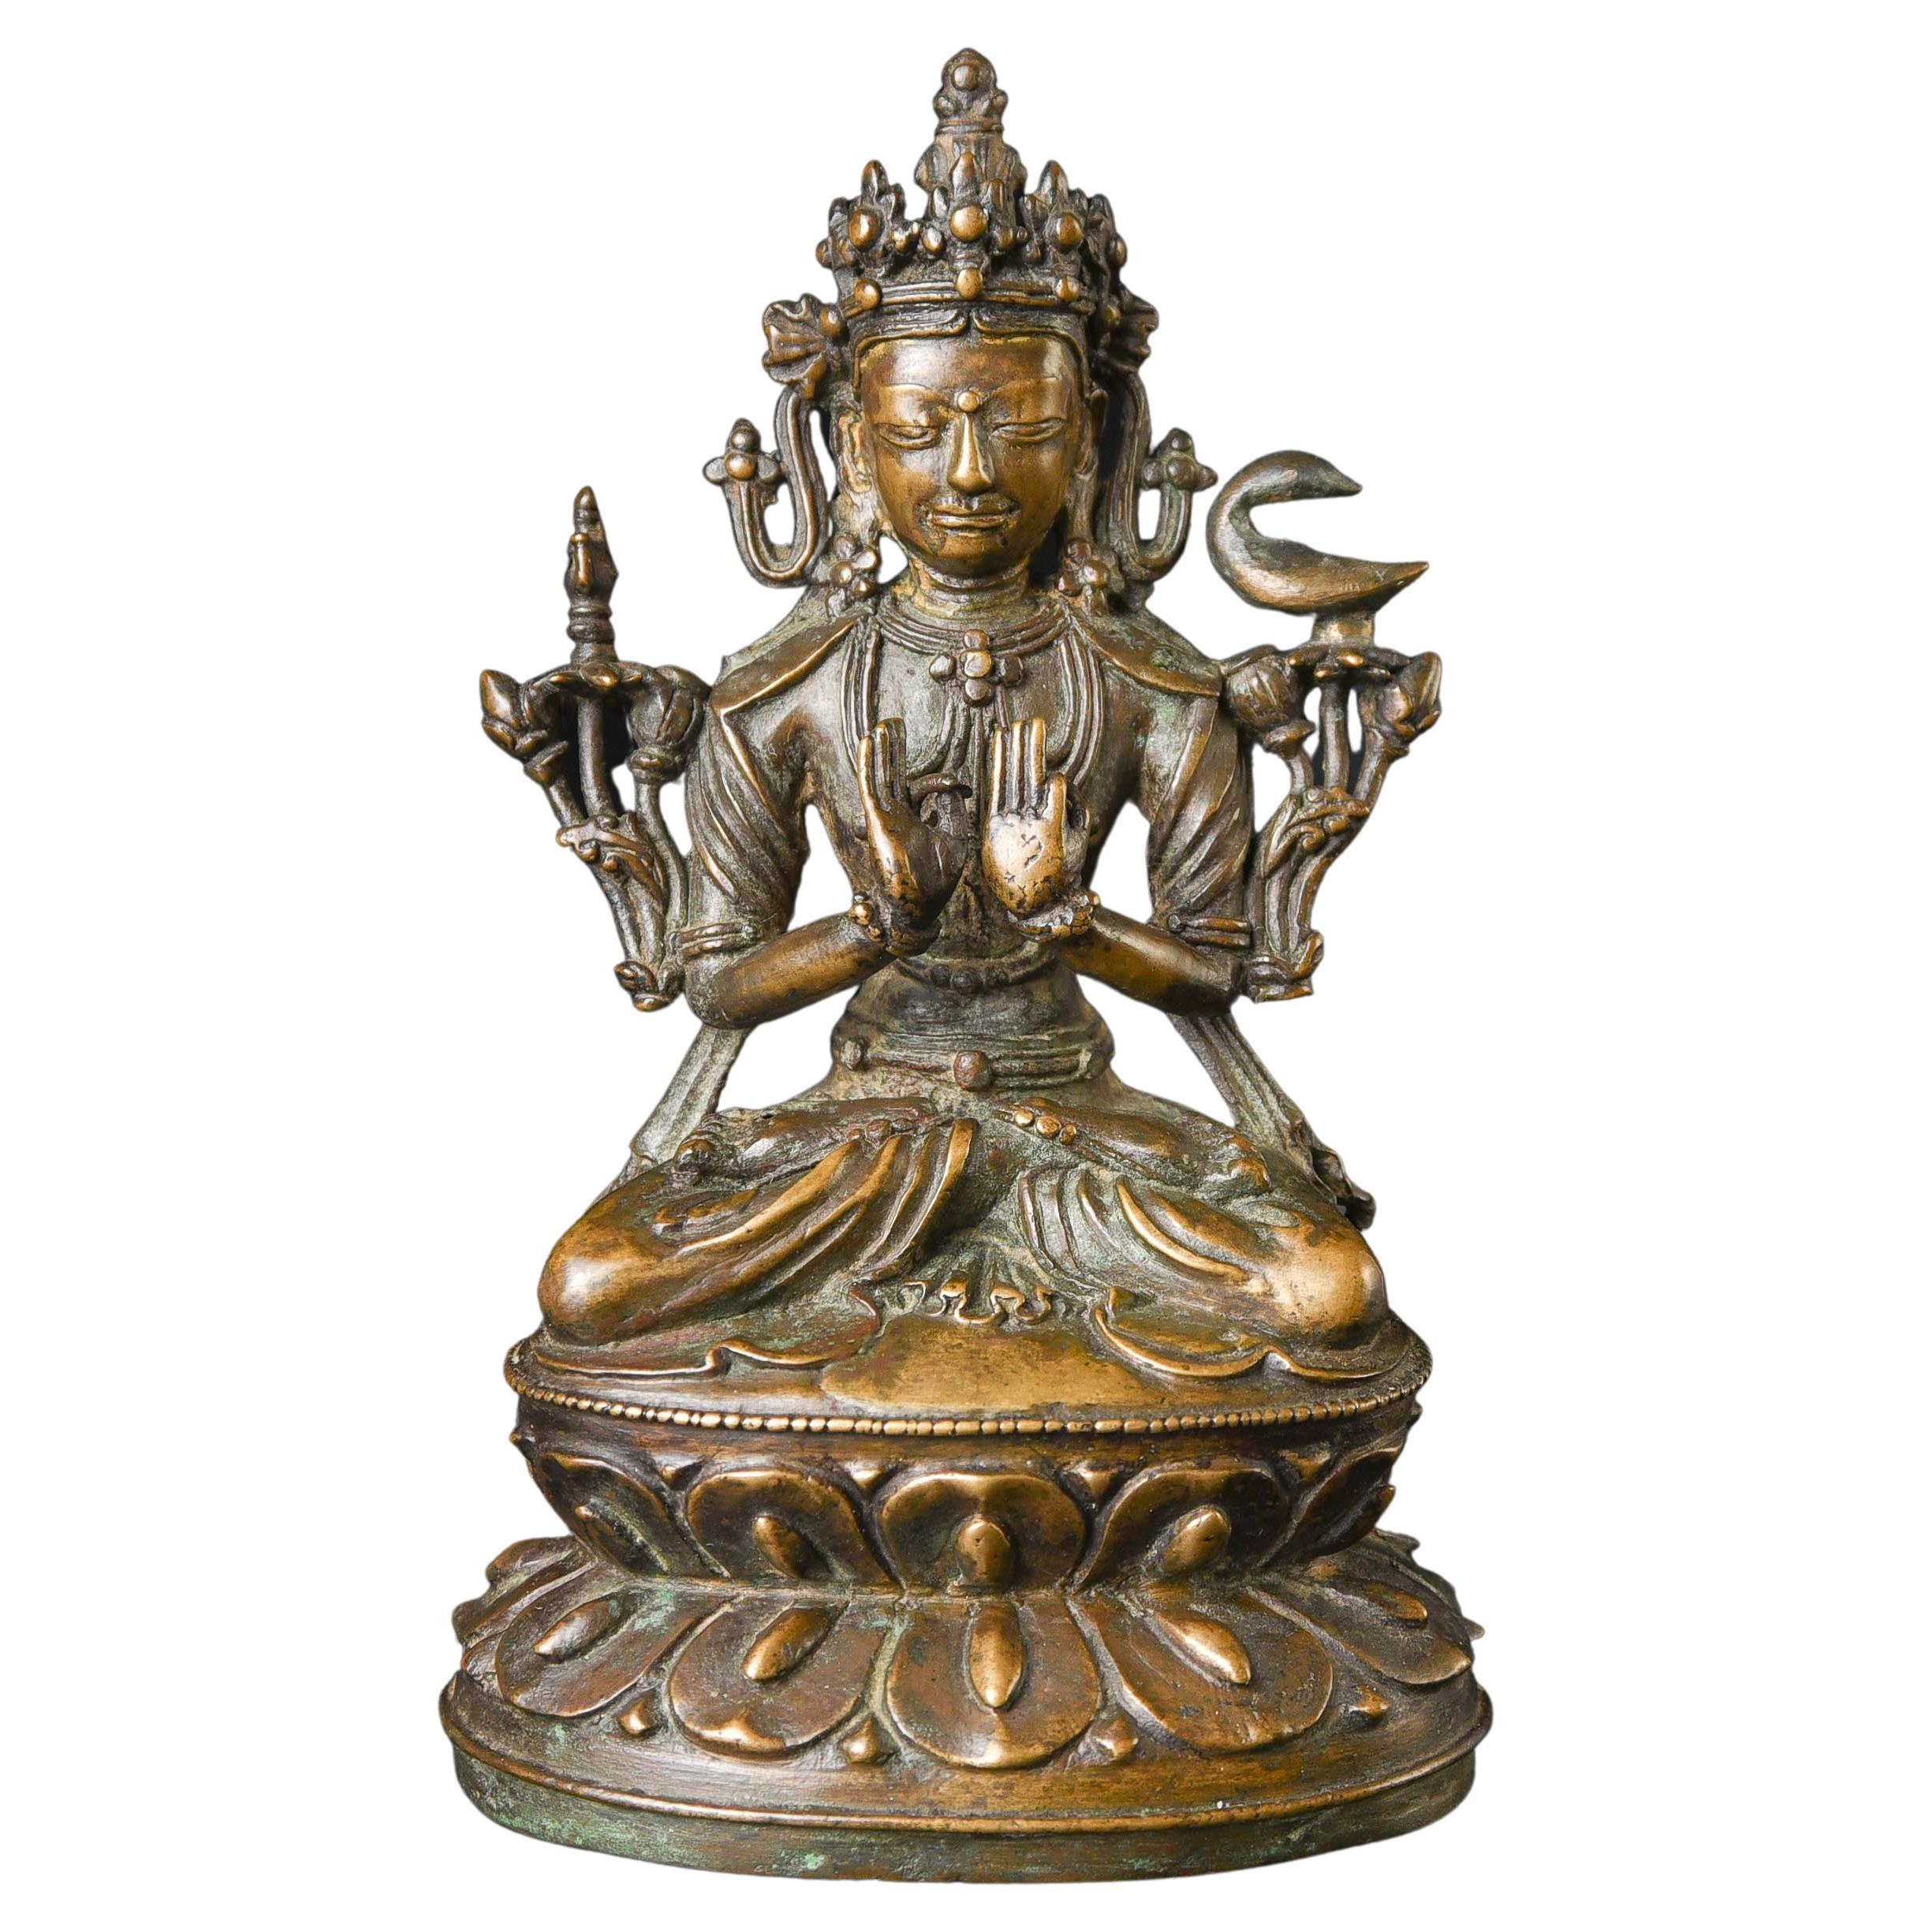 Bouddha/Bodhisattva tibétain du 13/14e siècle